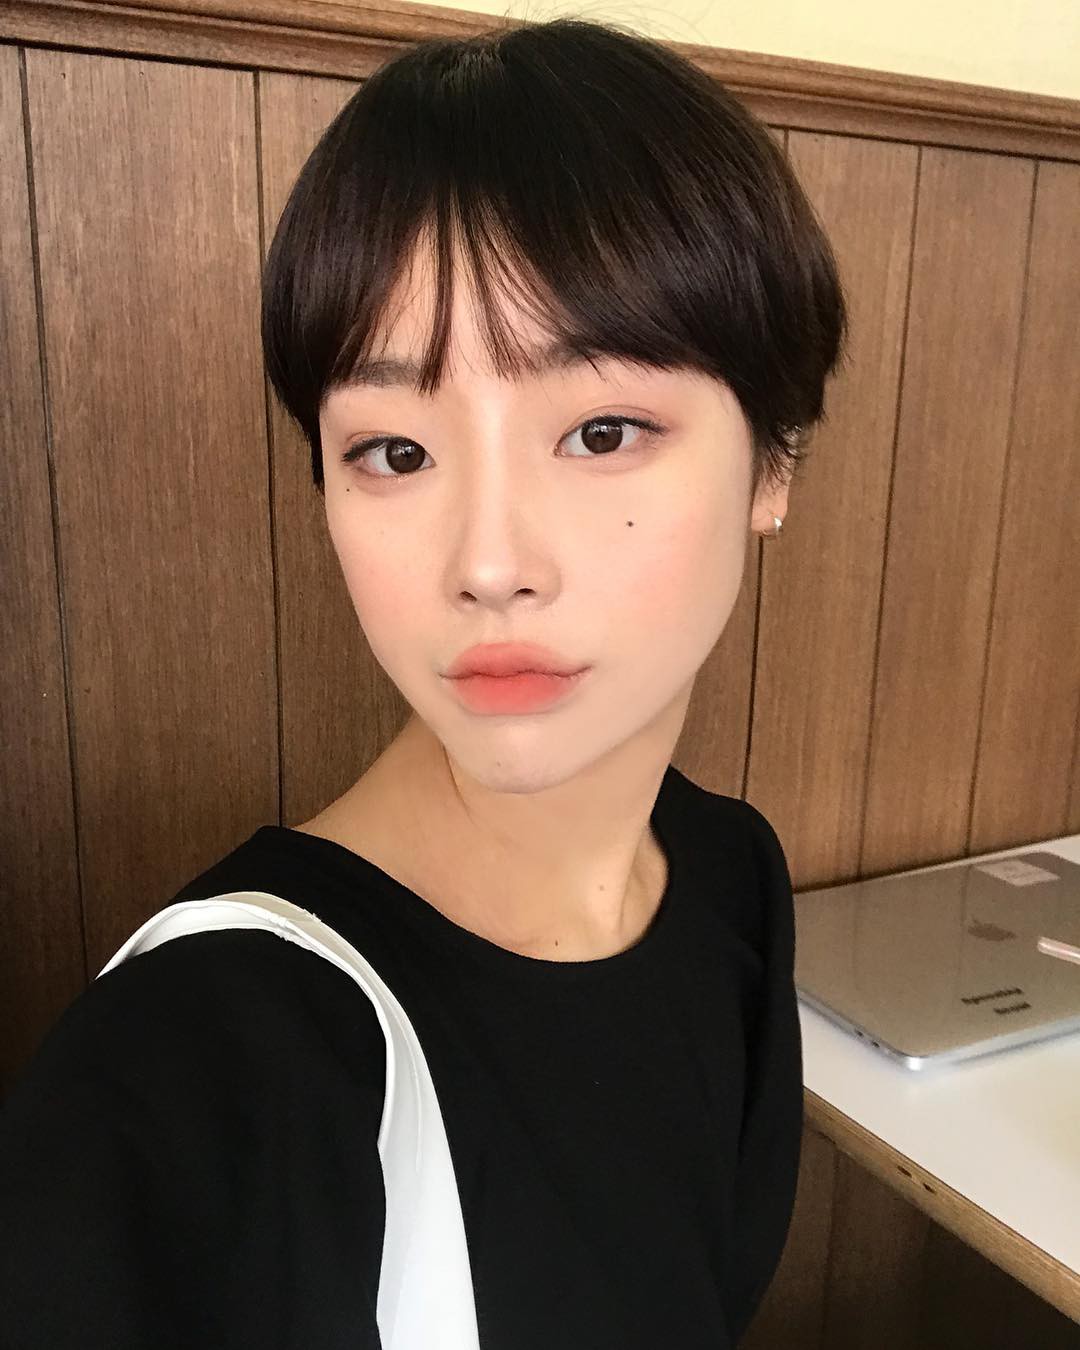 15 kiểu tóc pixie nữ Hàn Quốc đẹp cá tính phù hợp với nhiều gương mặt